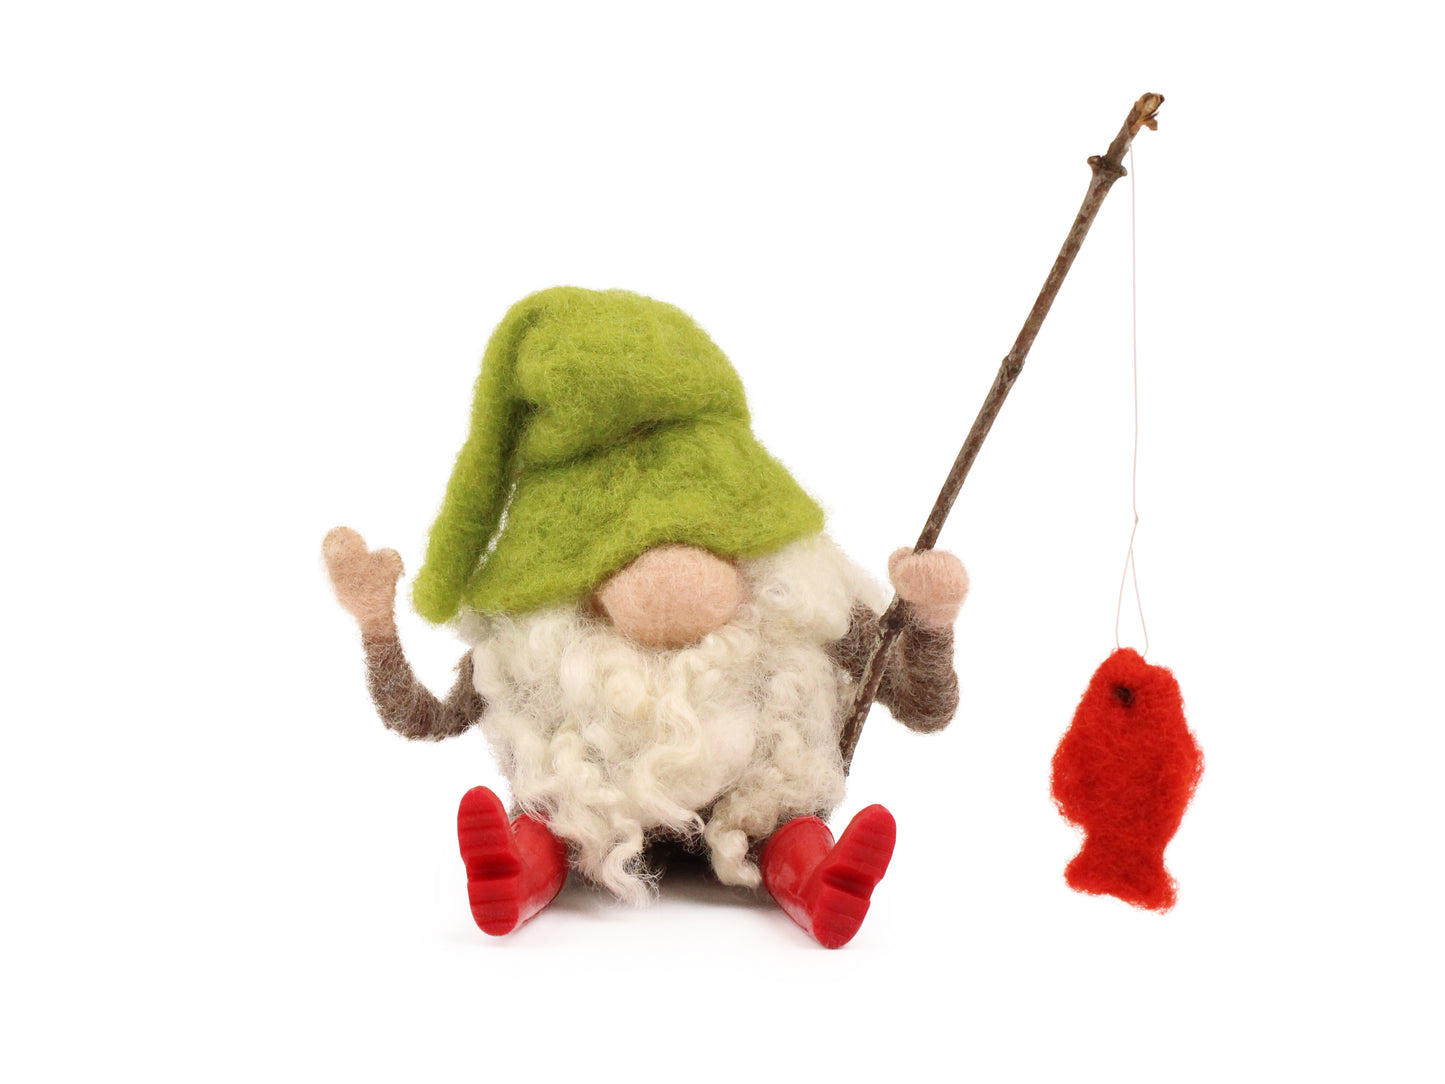 Fishing Gnome Small Needle Felt Kit - The Makerss